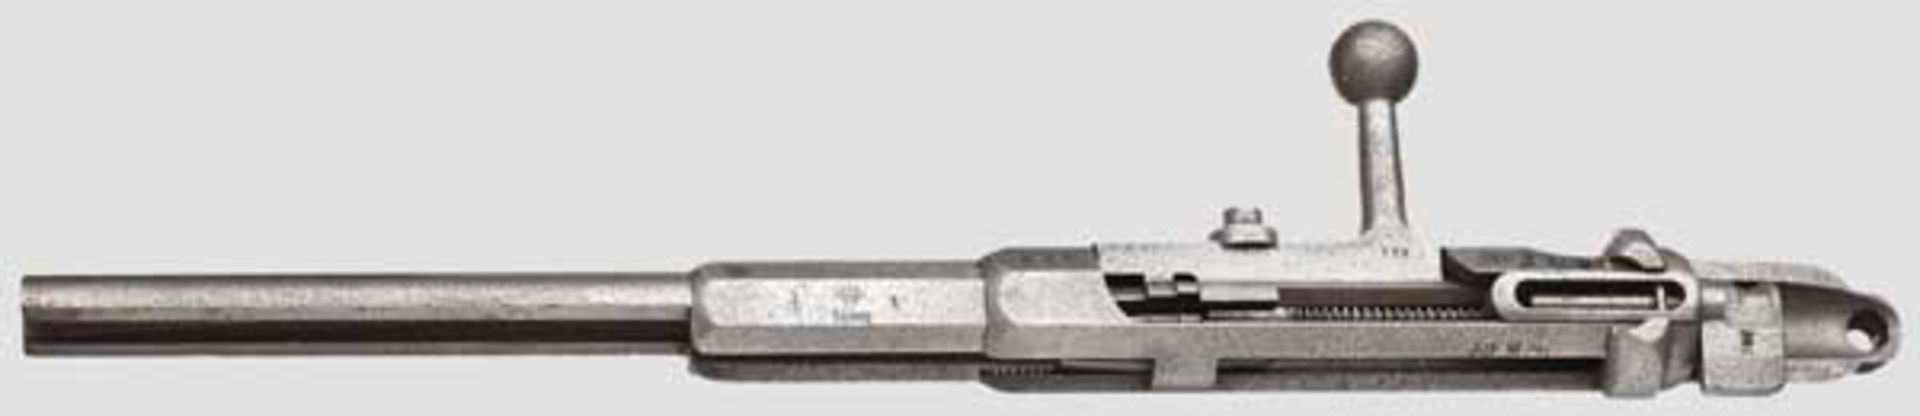 System-Schnittmodell Gewehr 71, Amberg Kal. 11 mm, Nr. 128. Laufwurzel gemarkt "A" für Ausschuss,